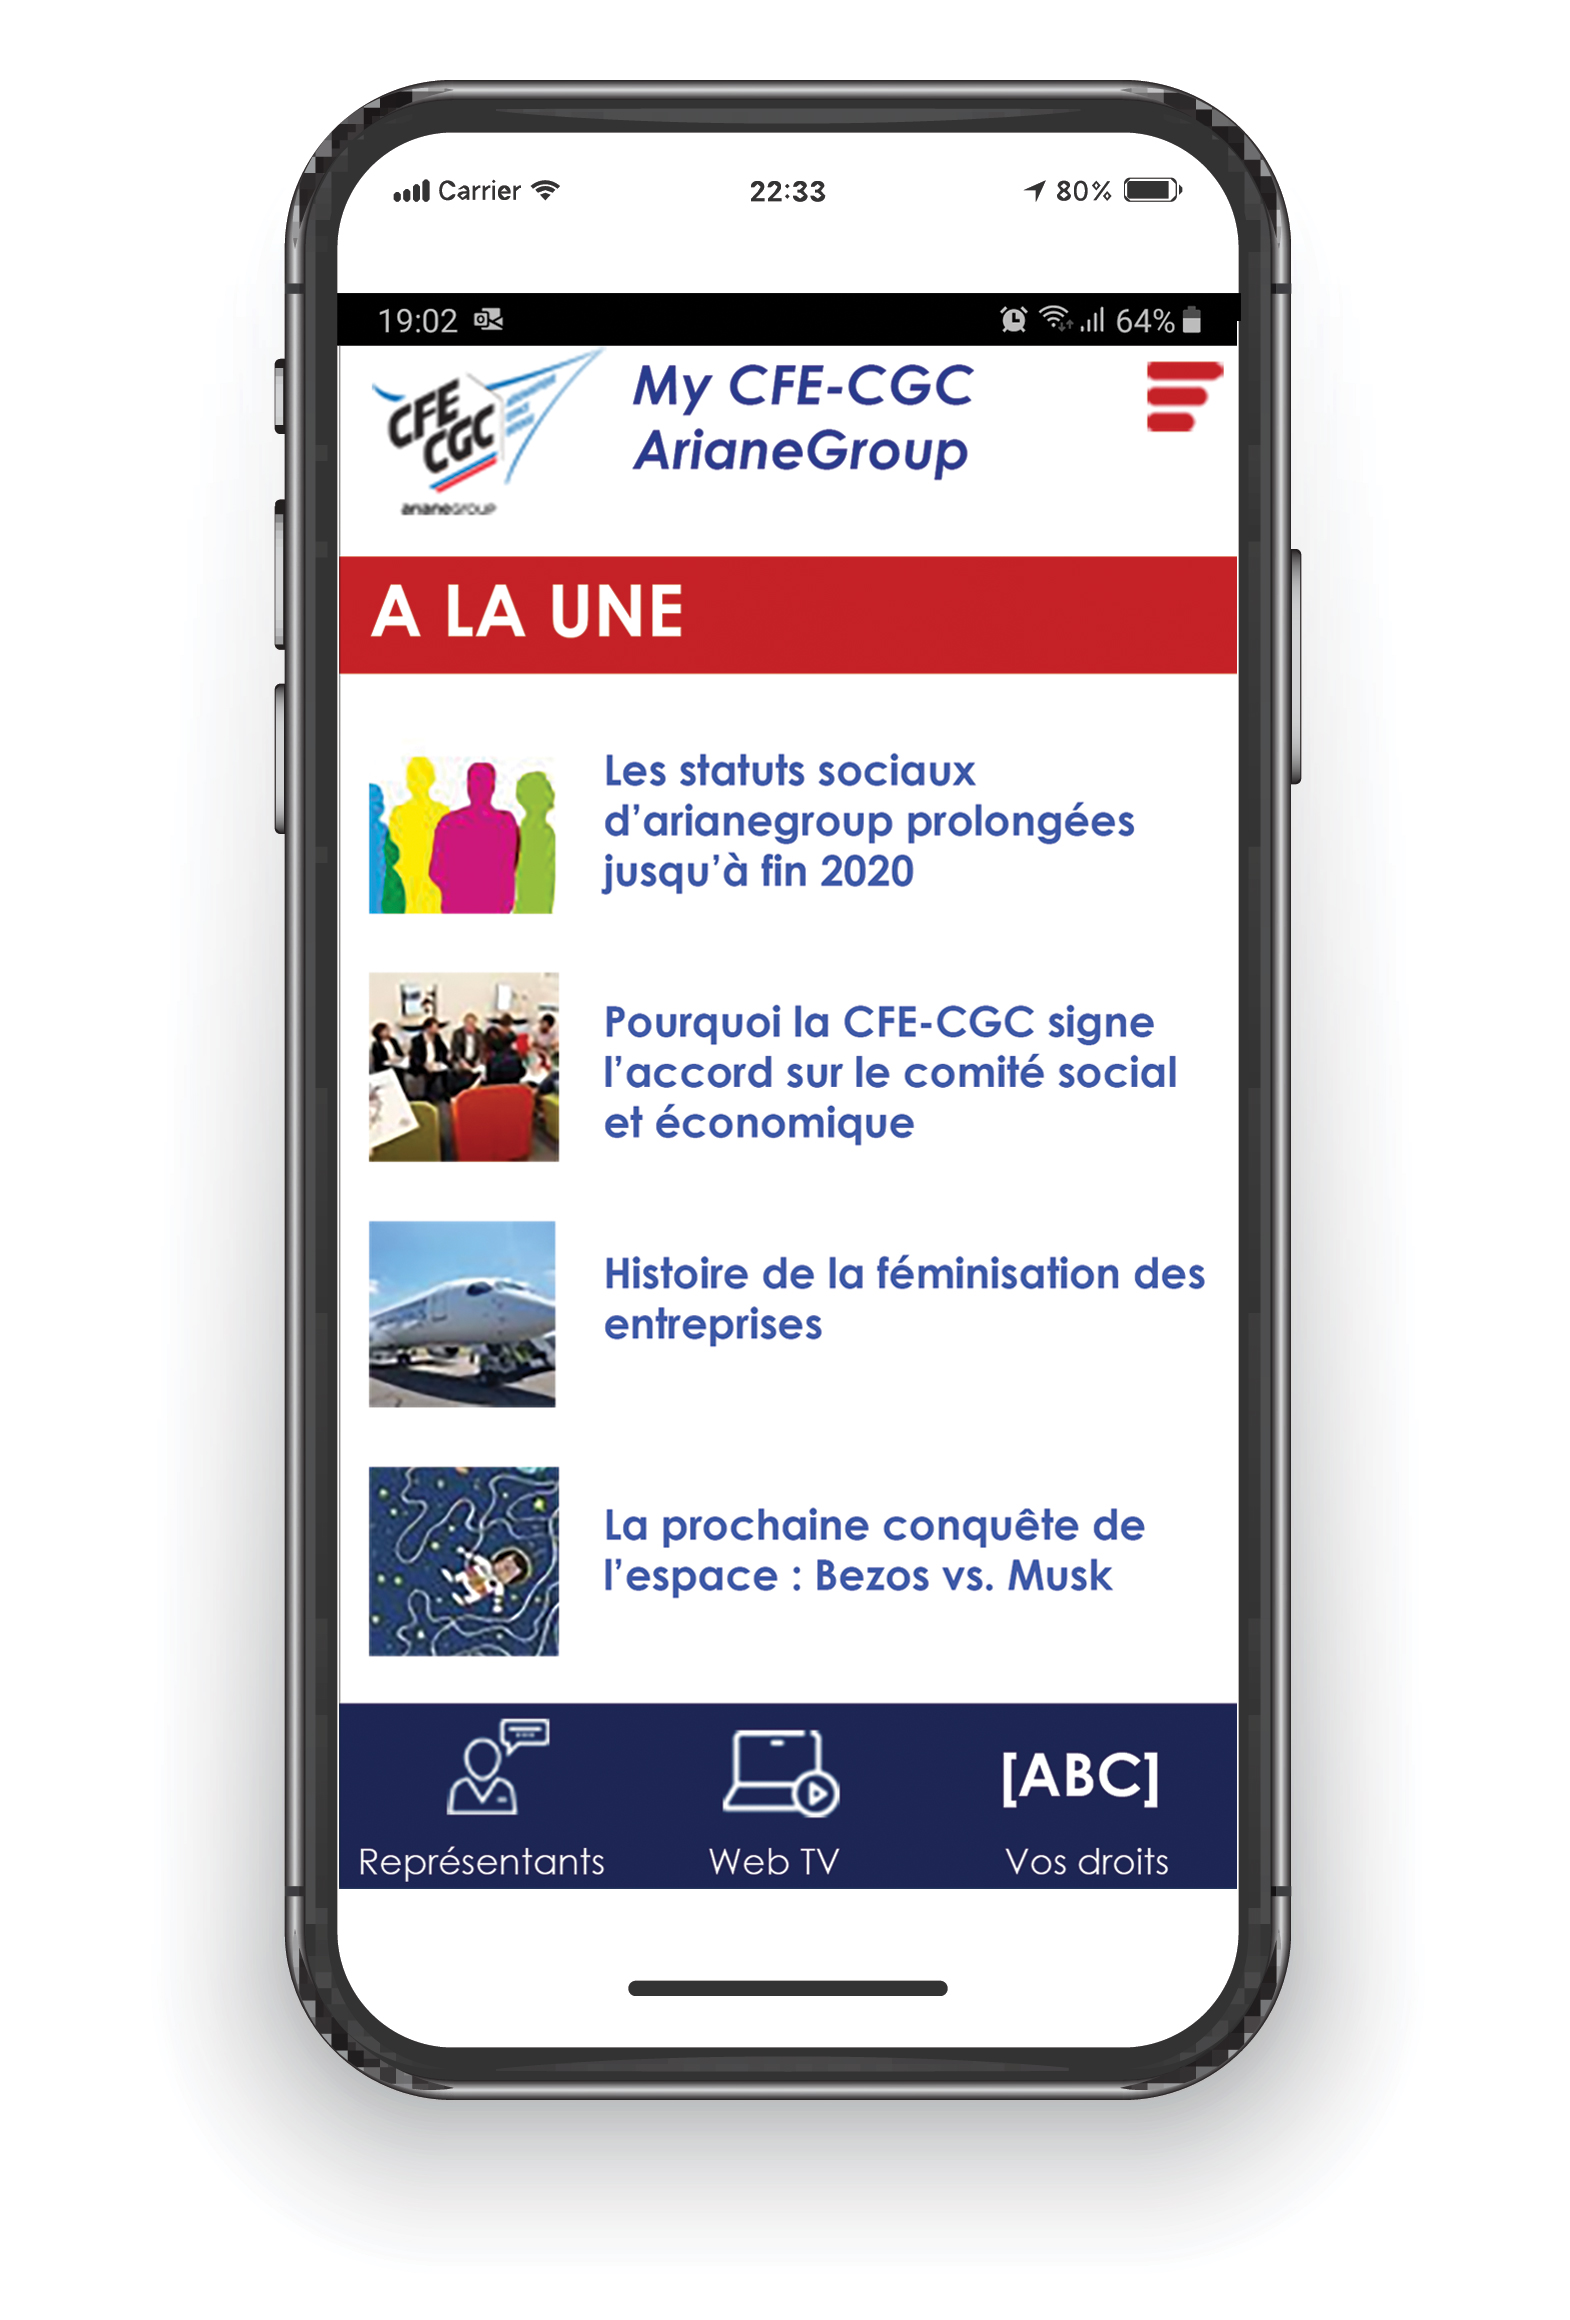 My CFE-CGC ArianeGroup